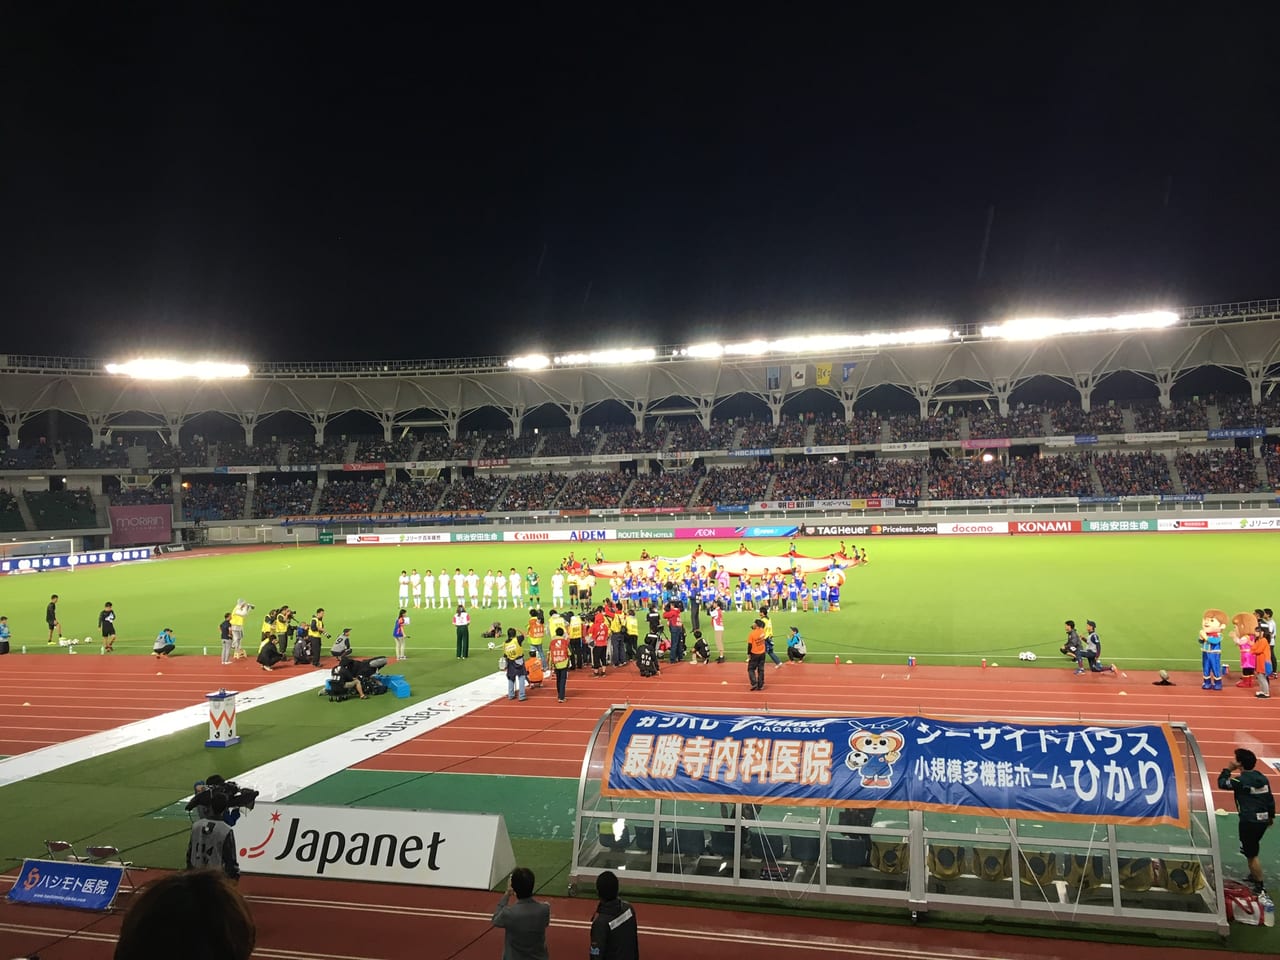 V長崎のホームスタジアムの様子です。